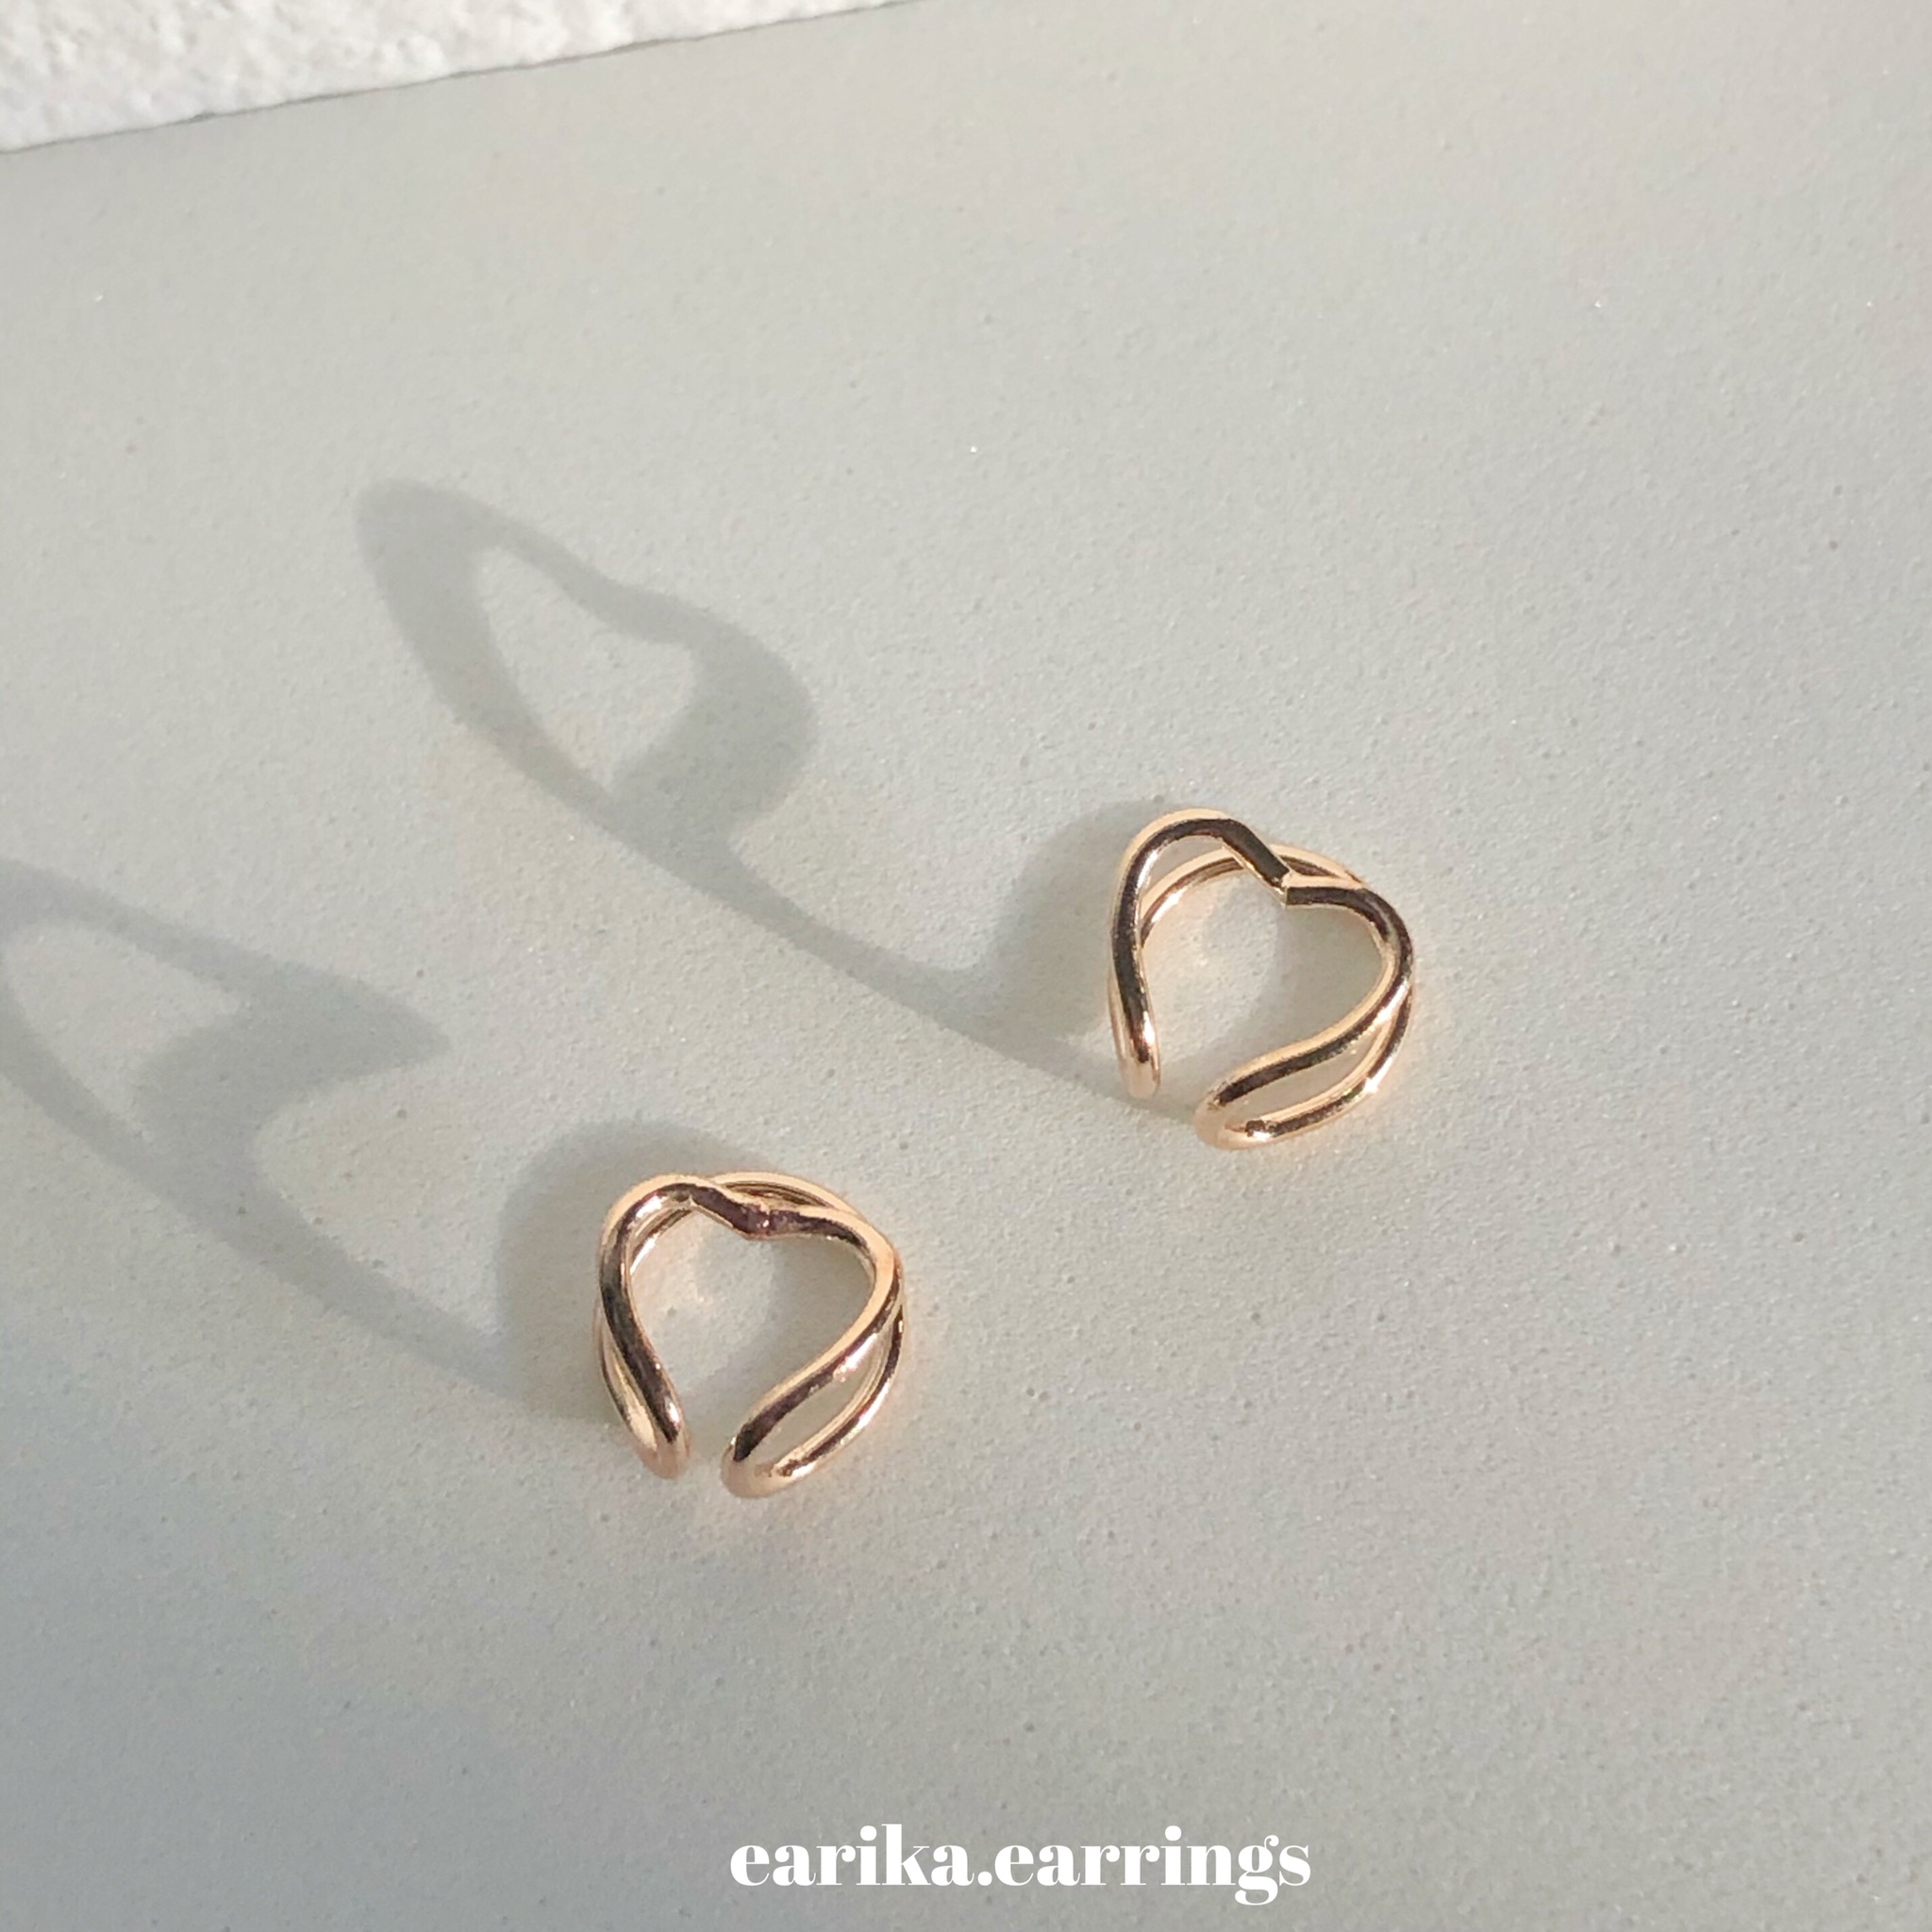 earika.earrings - gold Lev cuff ต่างหูหนีบหัวใจ สามารถปรับขนาดได้